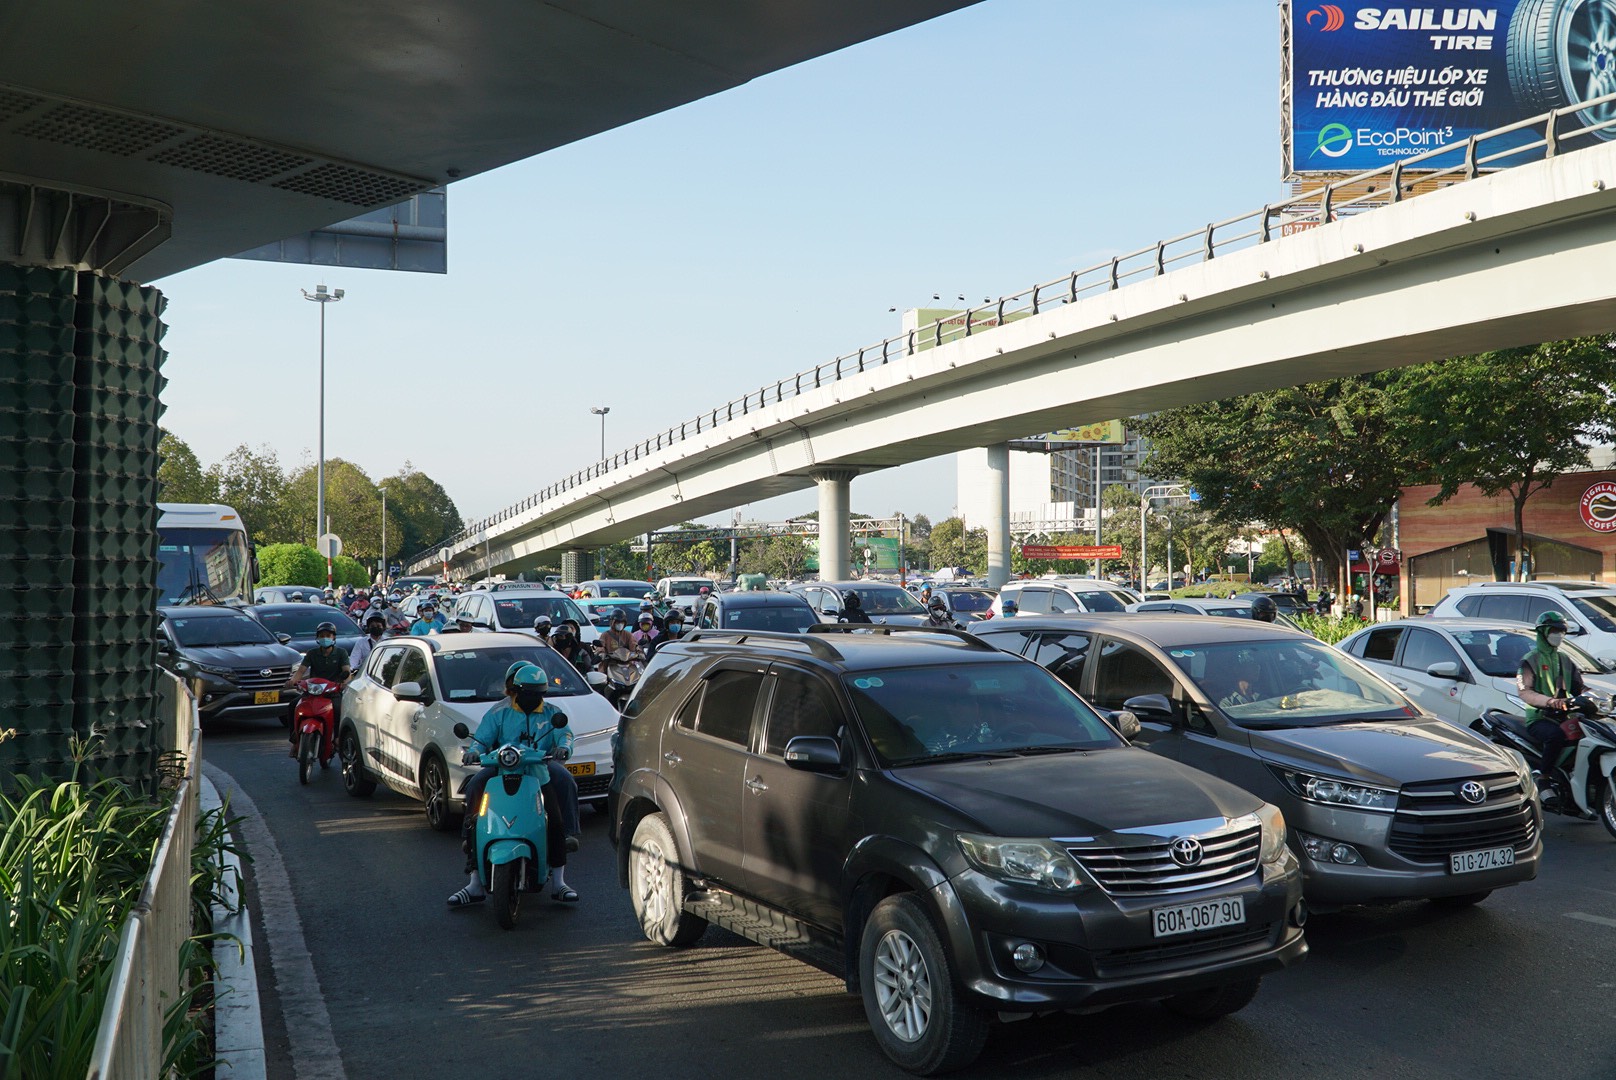 Phía đường Trường Sơn trở nên đông đúc, các phương tiện di chuyển chậm kéo dài để vào sân bay Tân Sơn Nhất